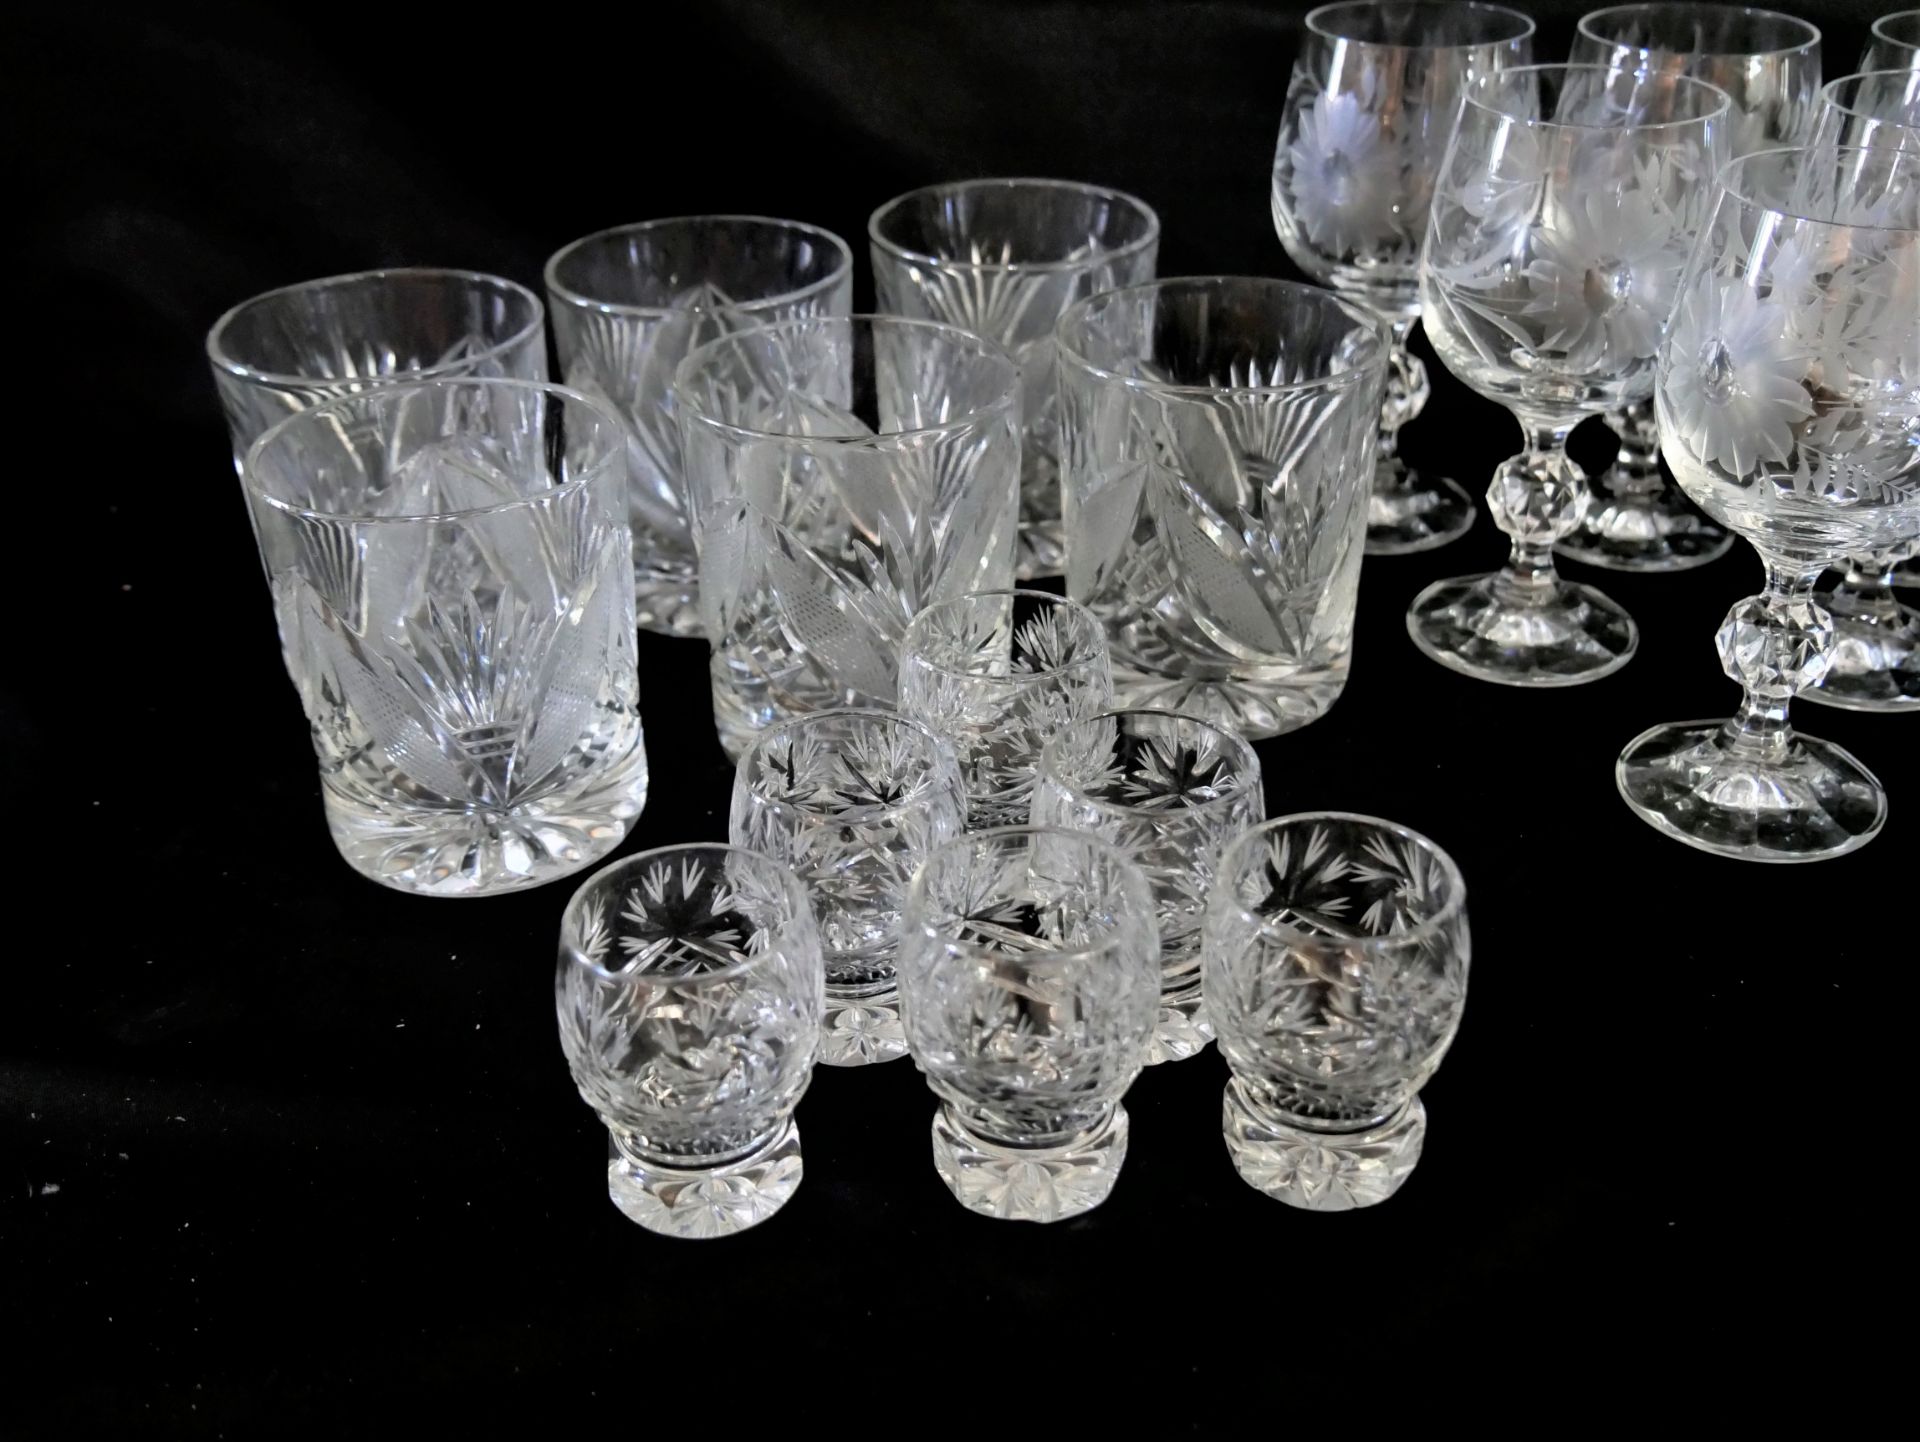 Lot Kristallglas, bestehend aus 6 Likörgläser, 6 Schnapsgläser, 6 Whiskygläser, 6 Weingläser. - Image 3 of 3